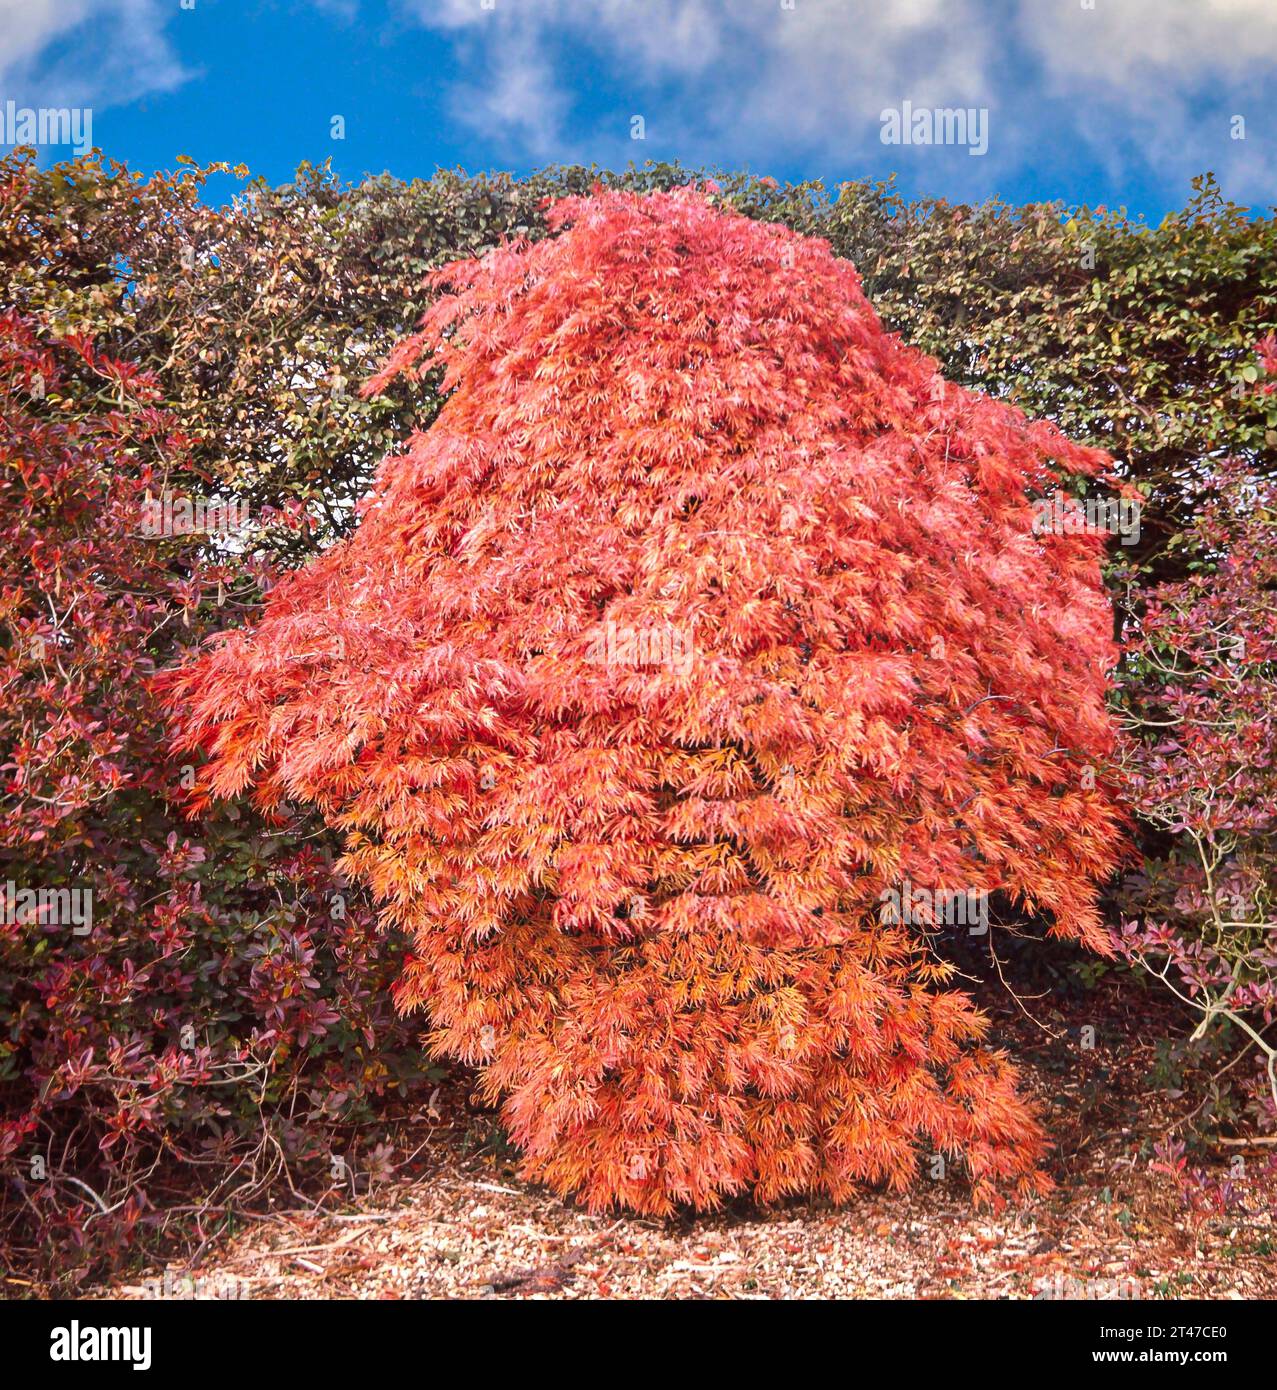 Acer palmatum dissectum ORNATUM common name Japanese Maple tree in autumn Stock Photo